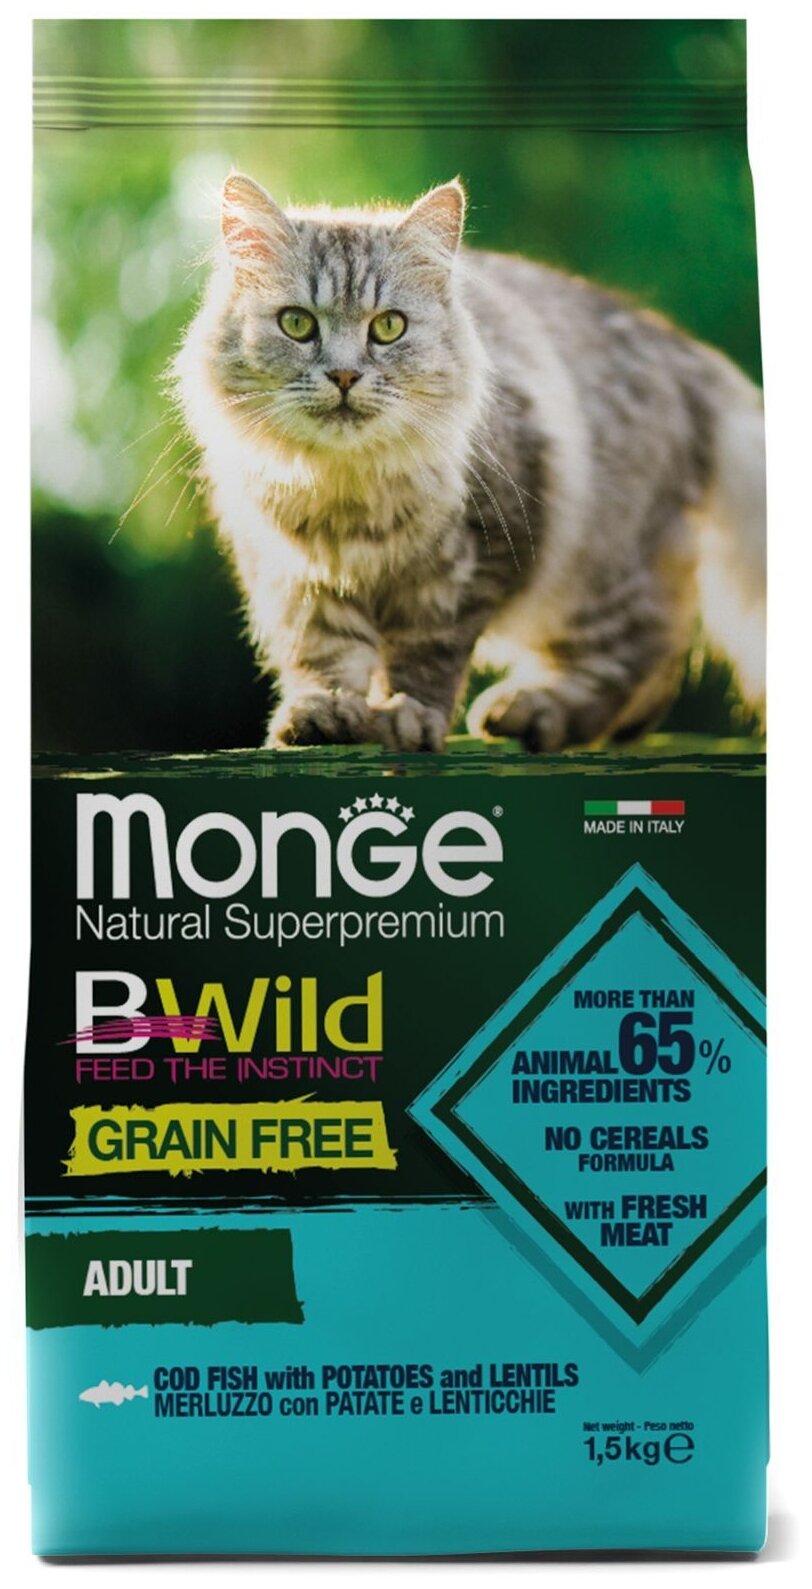 Сухой корм для кошек Monge BWILD Feed the Instinct, беззерновой, с треской, с картофелем, с чечевицей 1.5 кг